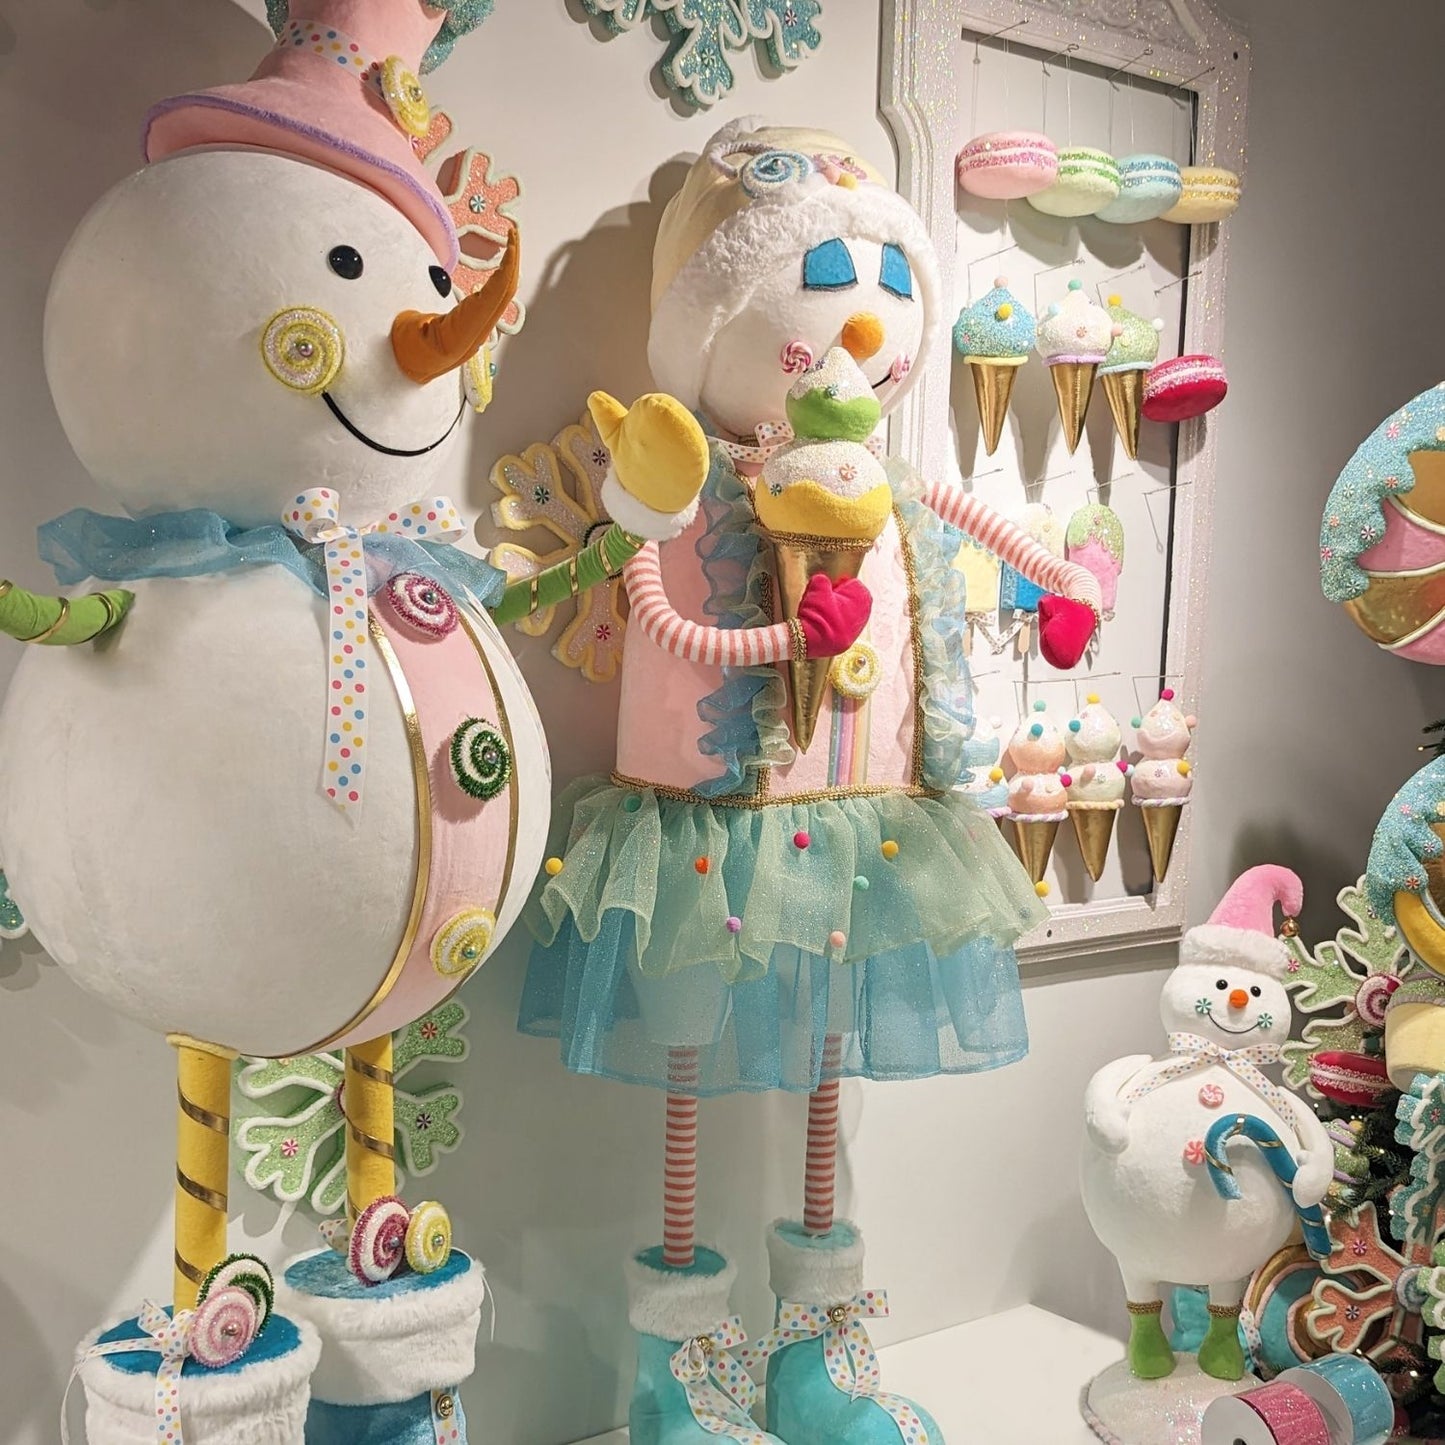 December Diamonds Snow Cream Shoppe 51" Snow Princess With Ice Cream Figurine